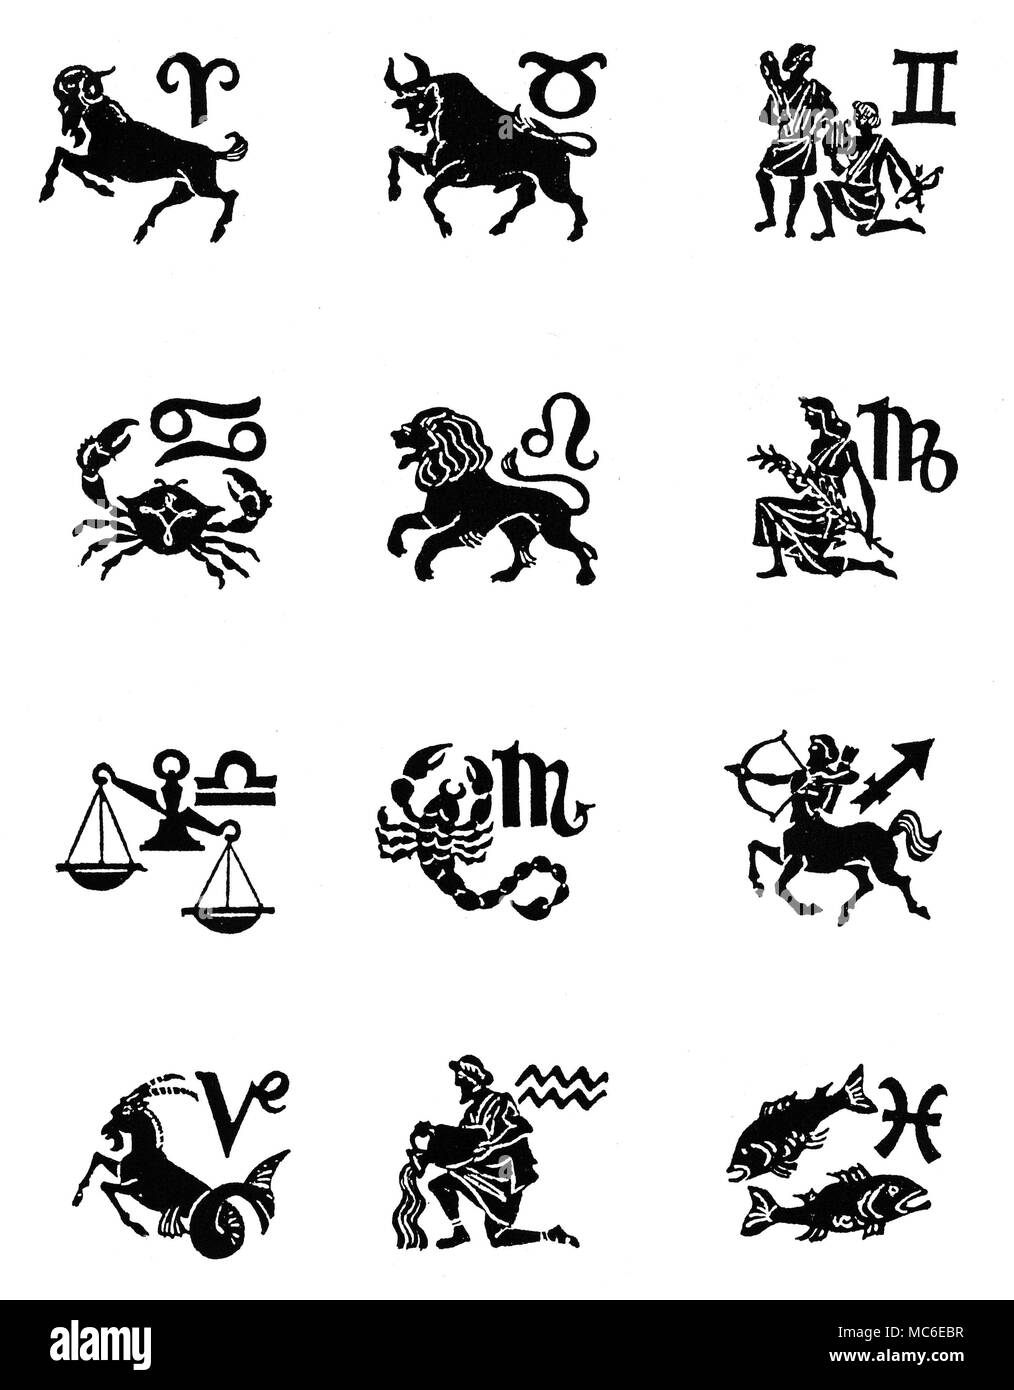 Zodiac - douze signes du zodiaque 12 images, avec les cachets, disposées en quatre registres (haut) Bélier, Taureau, Gémeaux, (deuxième ligne) Cancer, Lion, Vierge (troisième ligne), Balance, Scoprio, Sagittaire, et (quatrième ligne), Capricorne, Verseau et poissons. Conçu vers 1920. Banque D'Images